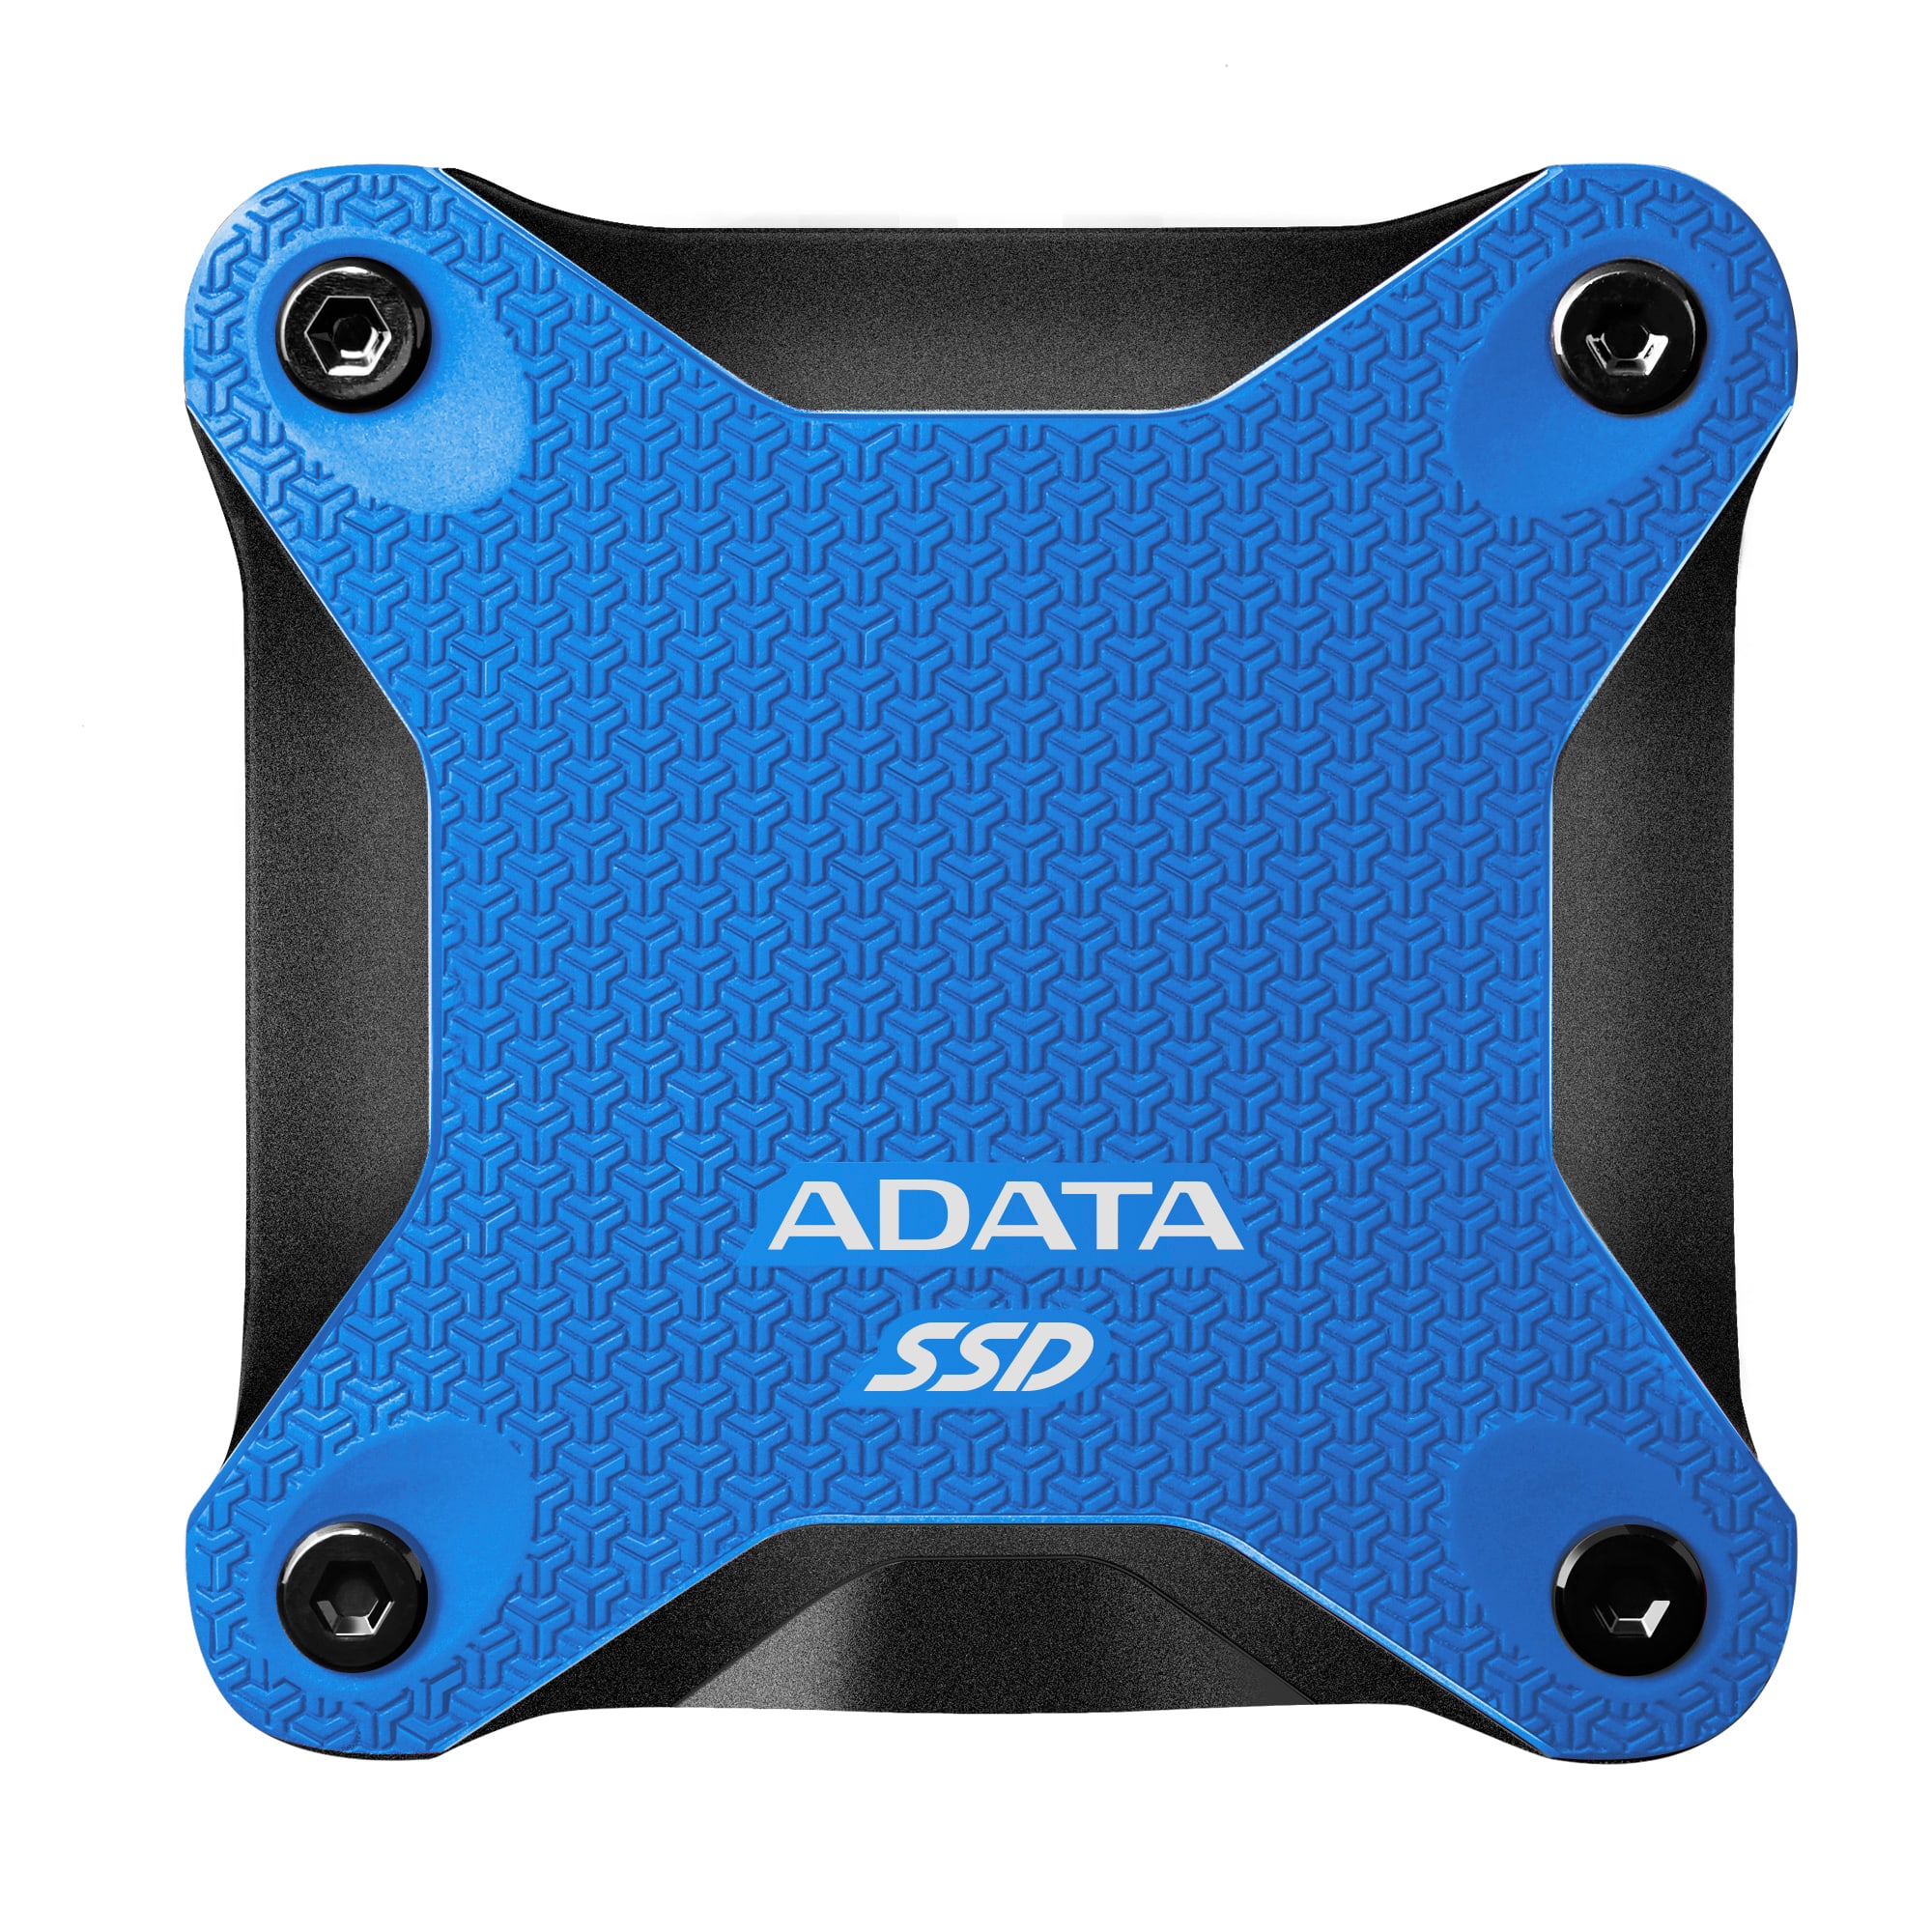 A-Data SSD SD600Q, 240GB, USB 3.2-rychlost 440/430 MB/s (ASD600Q-240GU31-CBL), Blue